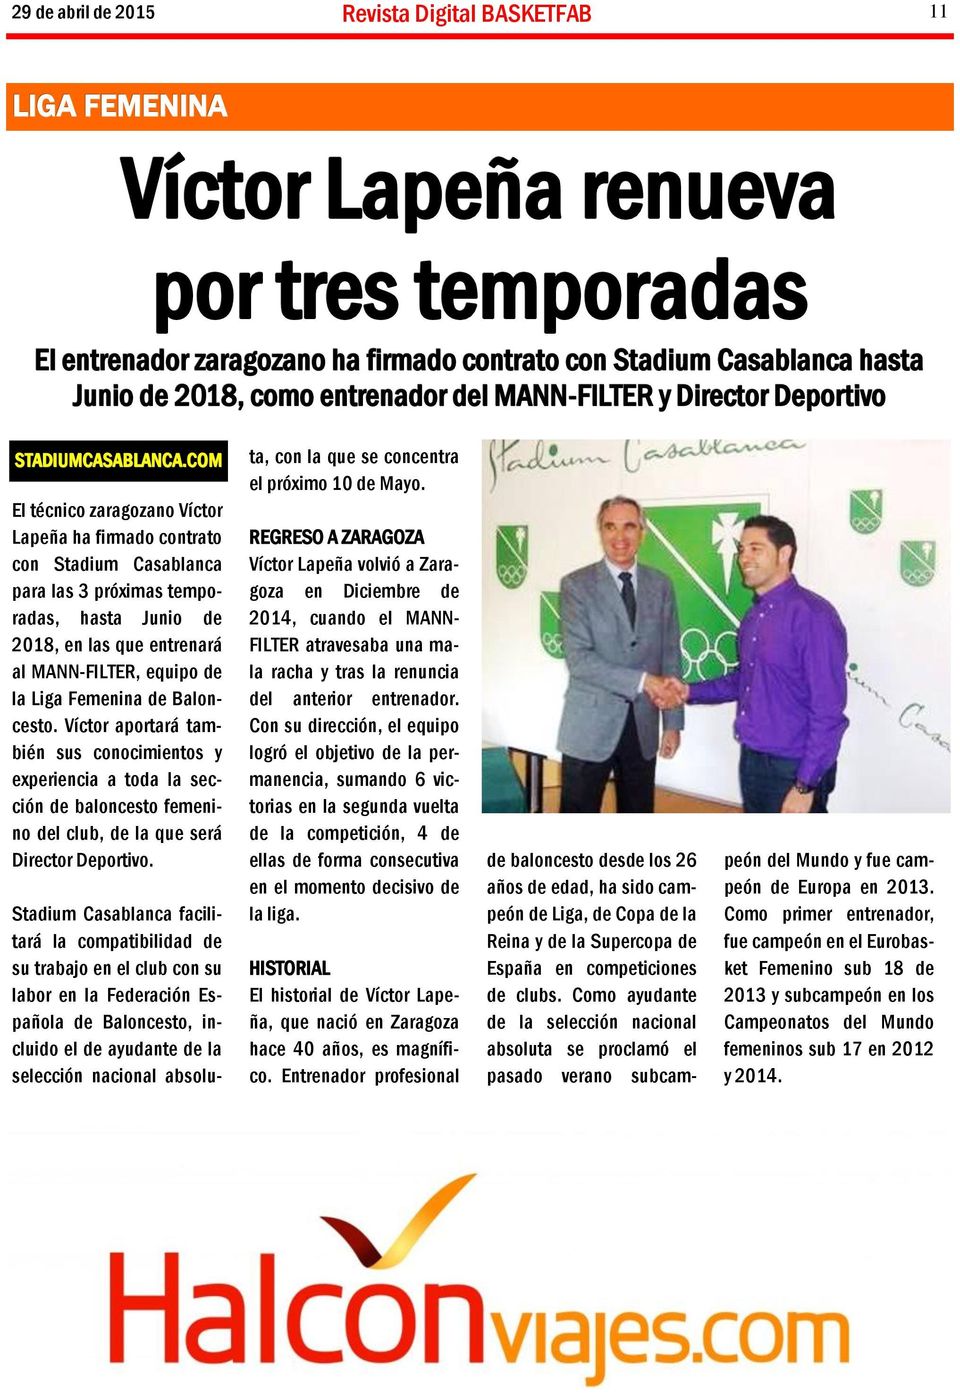 COM El técnico zaragozano Víctor Lapeña ha firmado contrato con Stadium Casablanca para las 3 próximas temporadas, hasta Junio de 2018, en las que entrenará al MANN-FILTER, equipo de la Liga Femenina